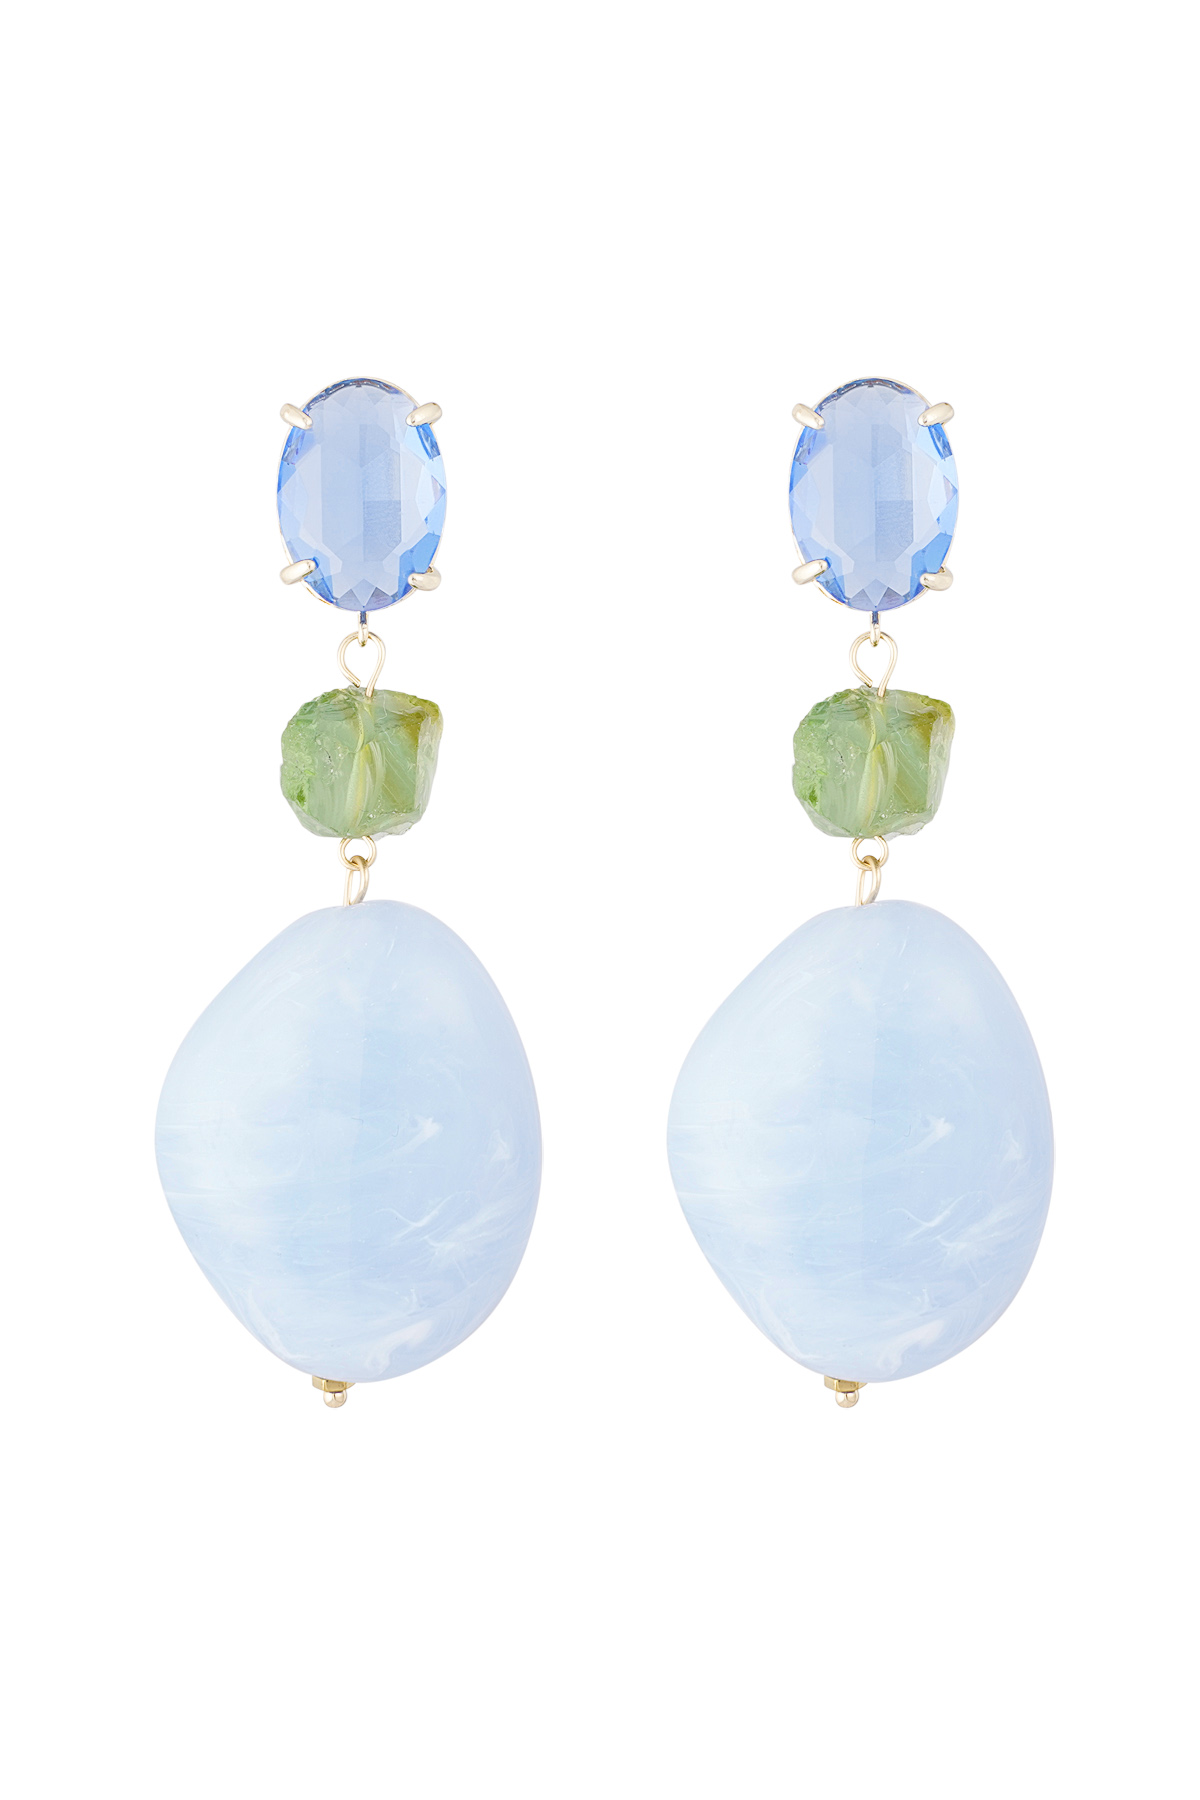 Statement glass earrings - blue/green